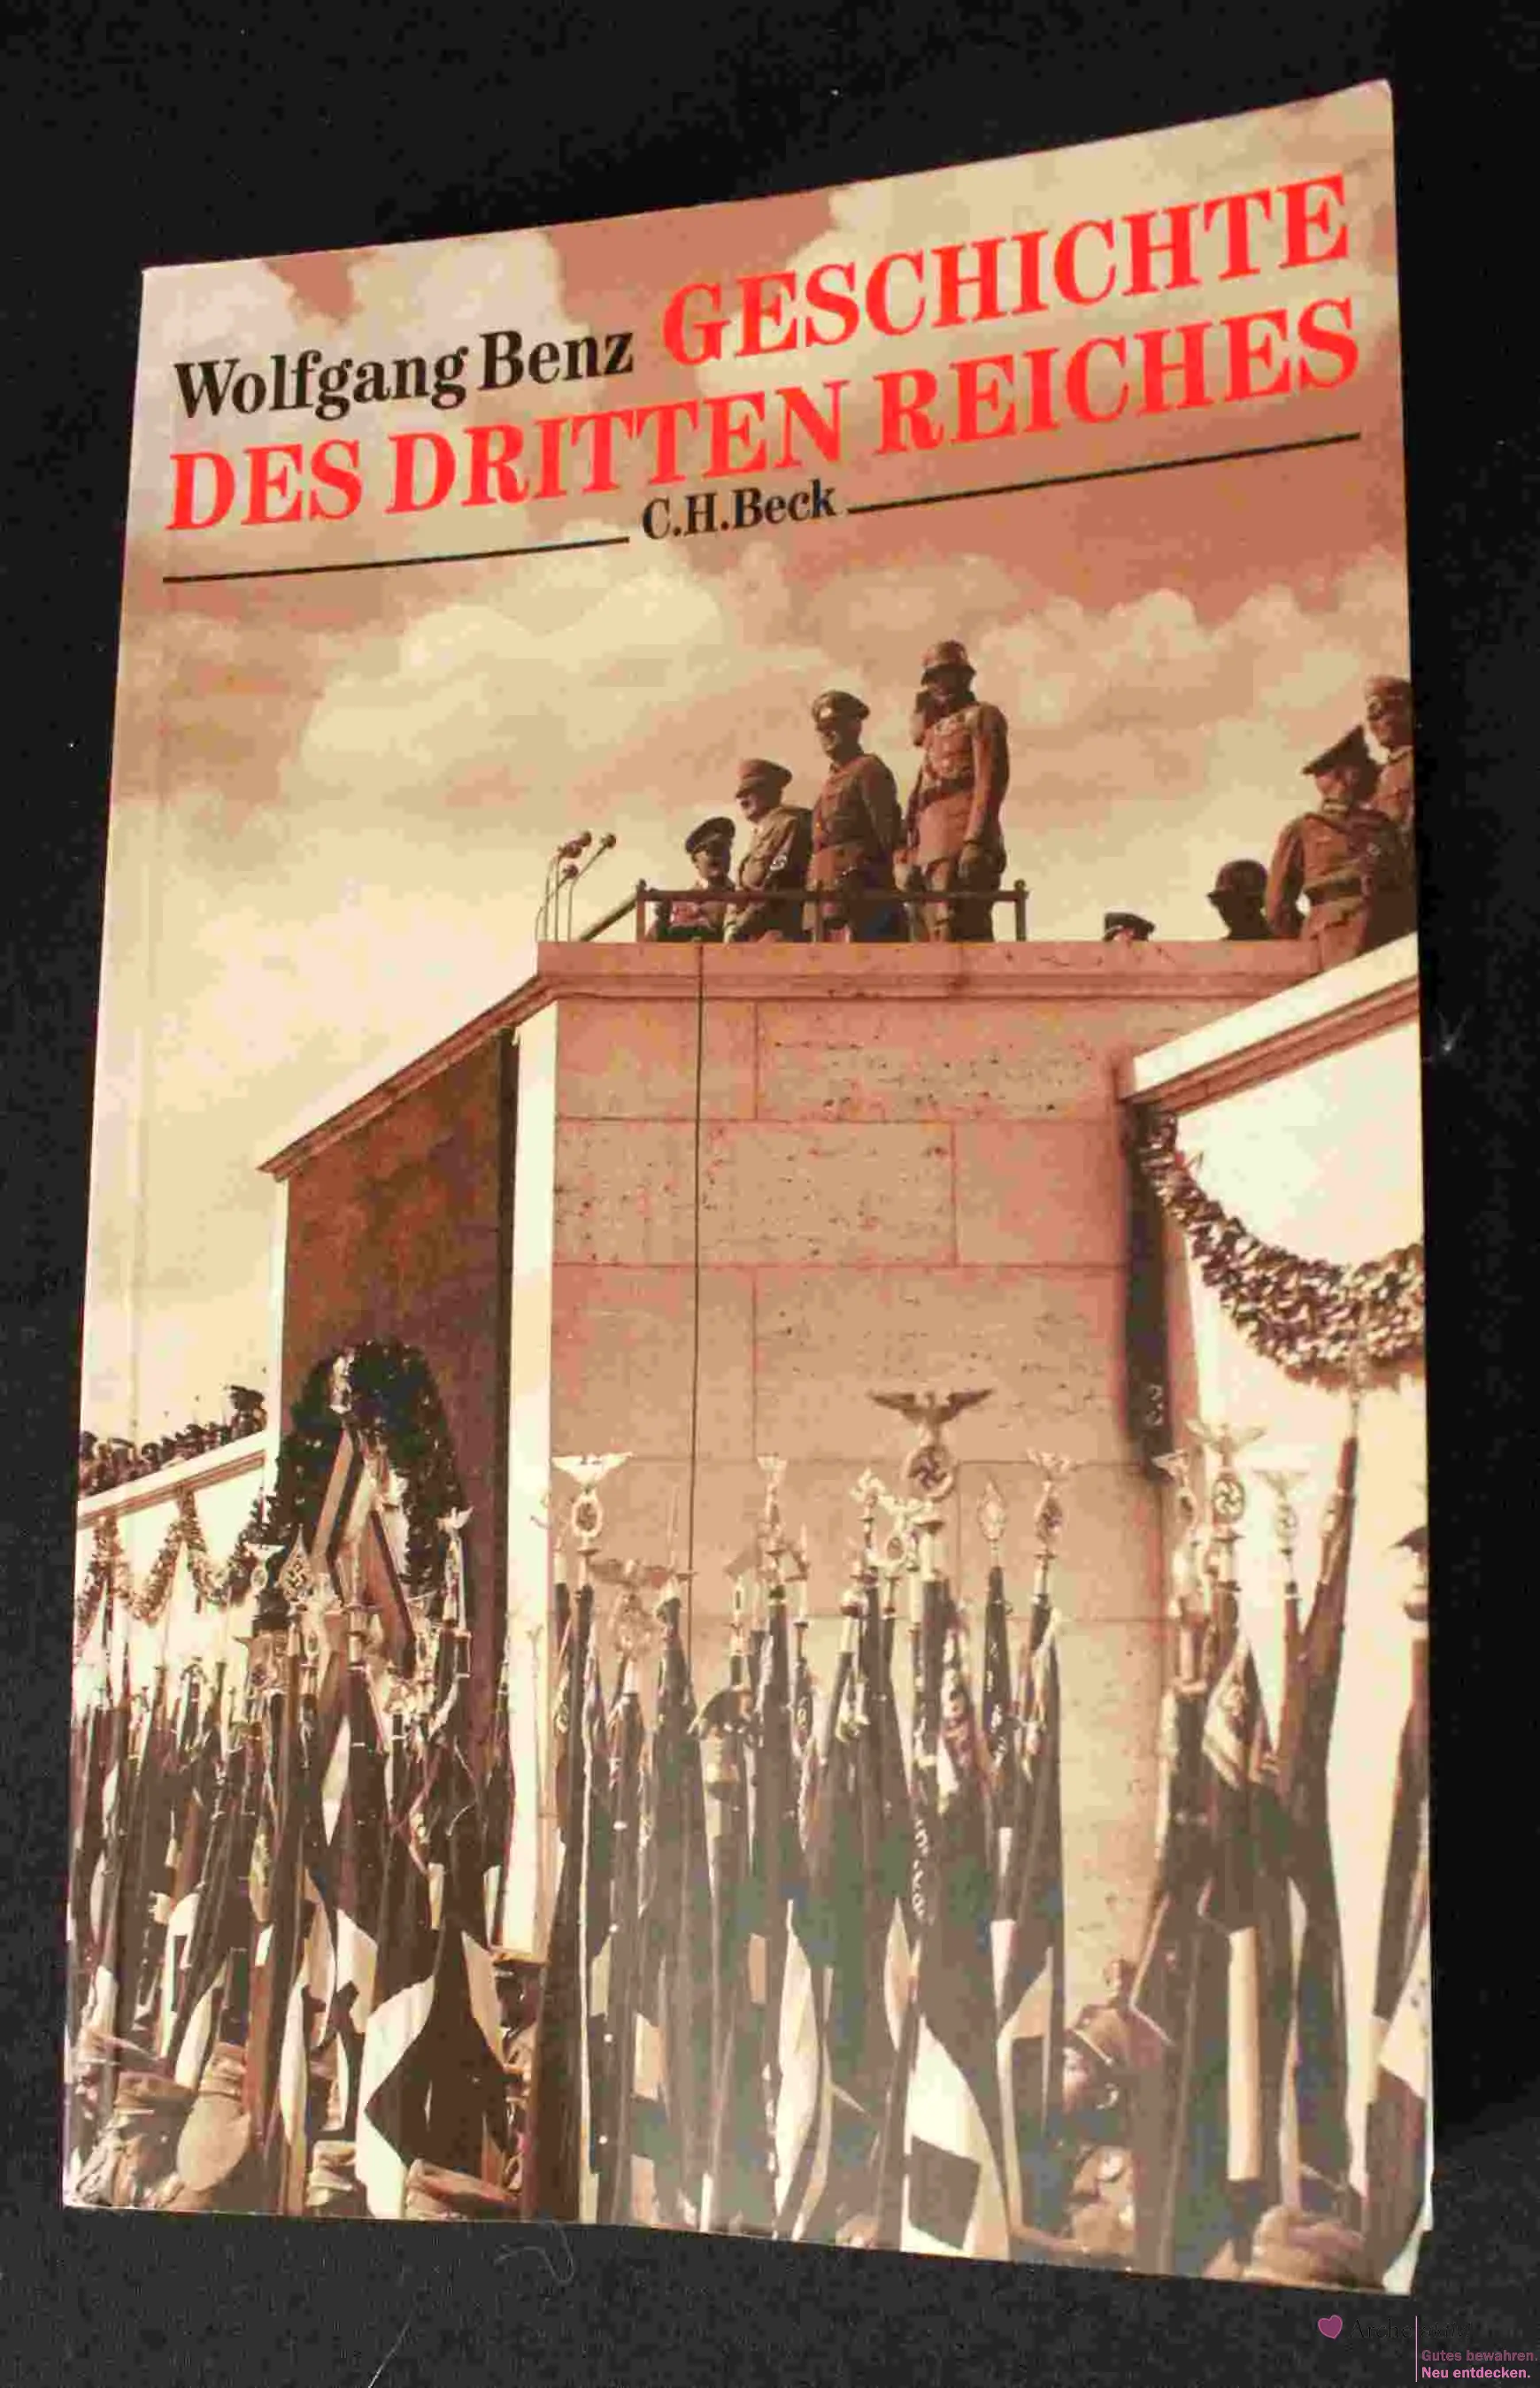 Geschichte des dritten Reiches - Wolfgang Benz - C:H.Beck - Top Zustand 